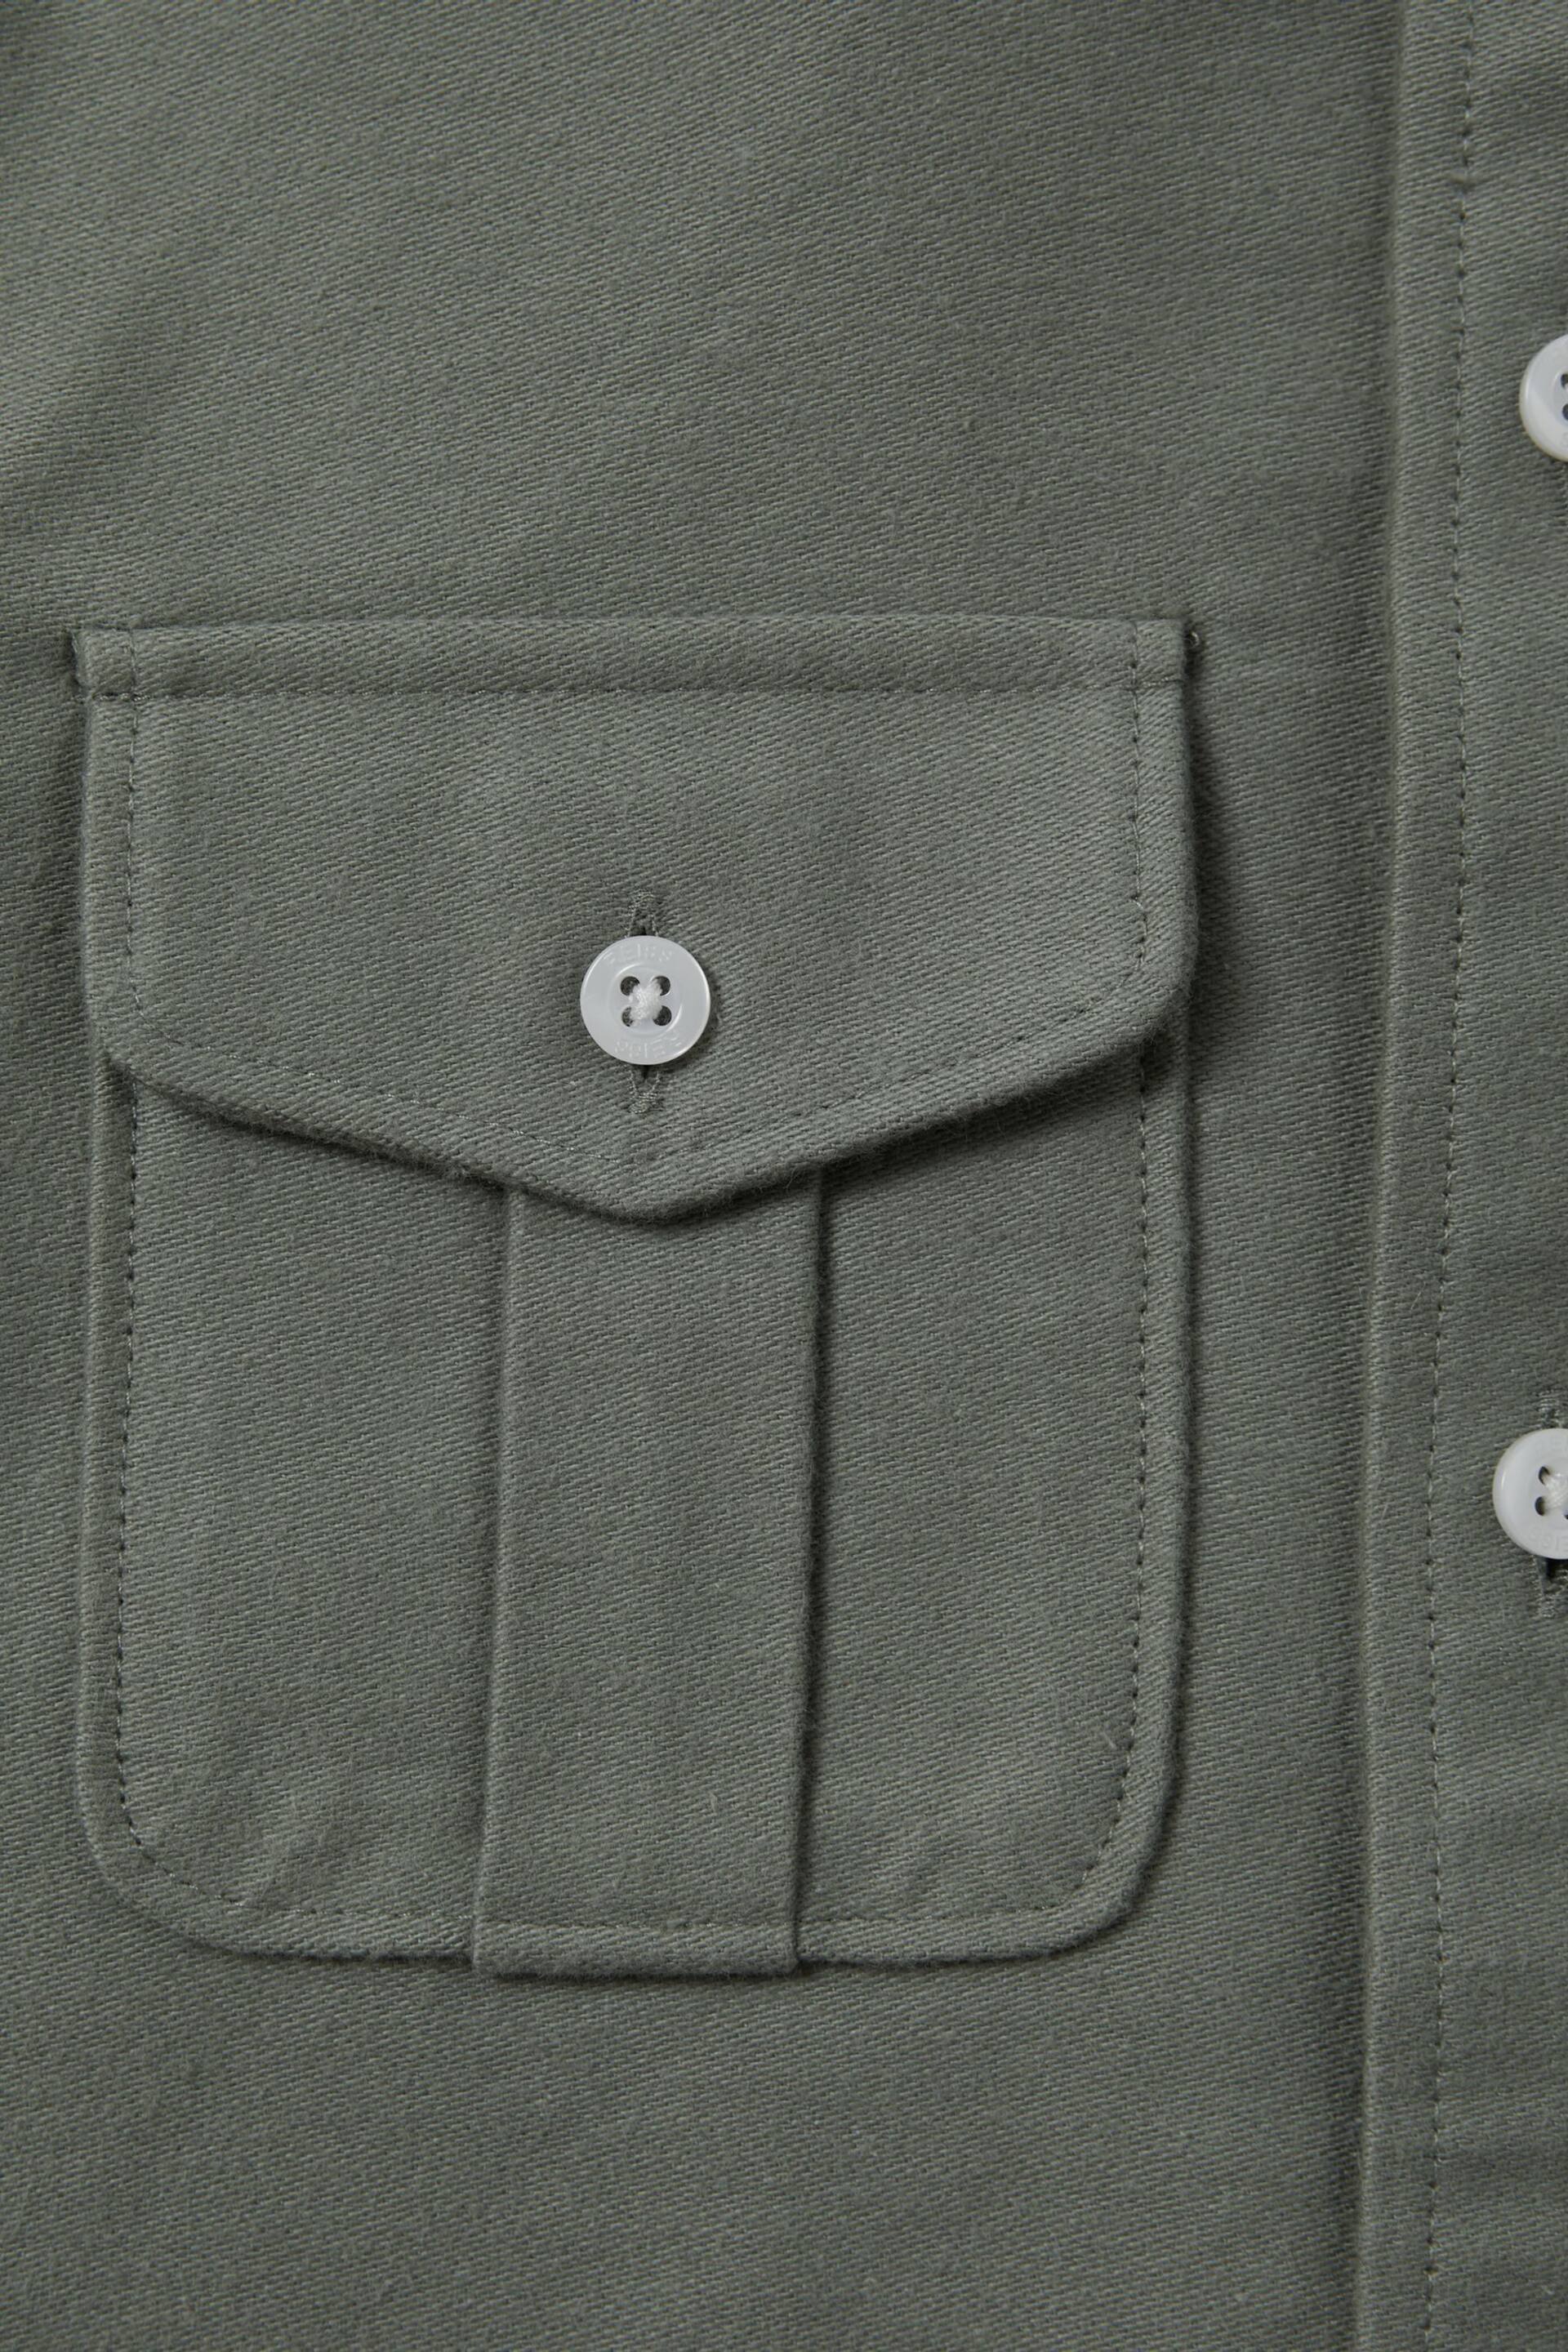 Reiss Pistachio Thomas Senior Brushed Cotton Patch Pocket Overshirt - Image 4 of 4